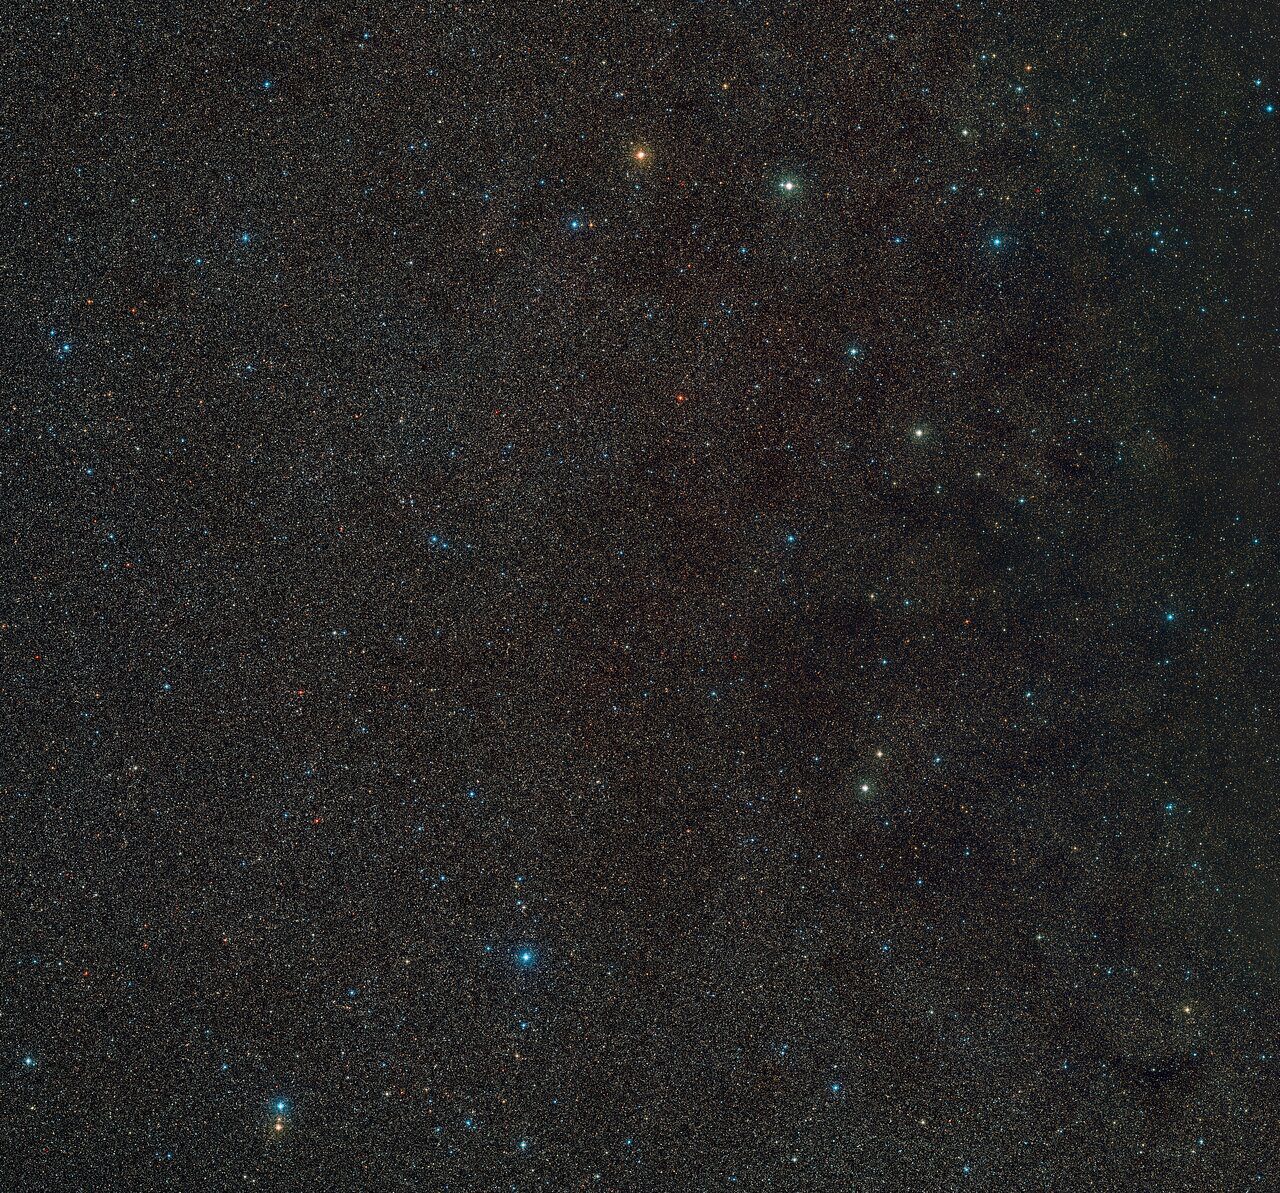 Un'immagine di una zona di spazio contenente centinaia di stelle distanti